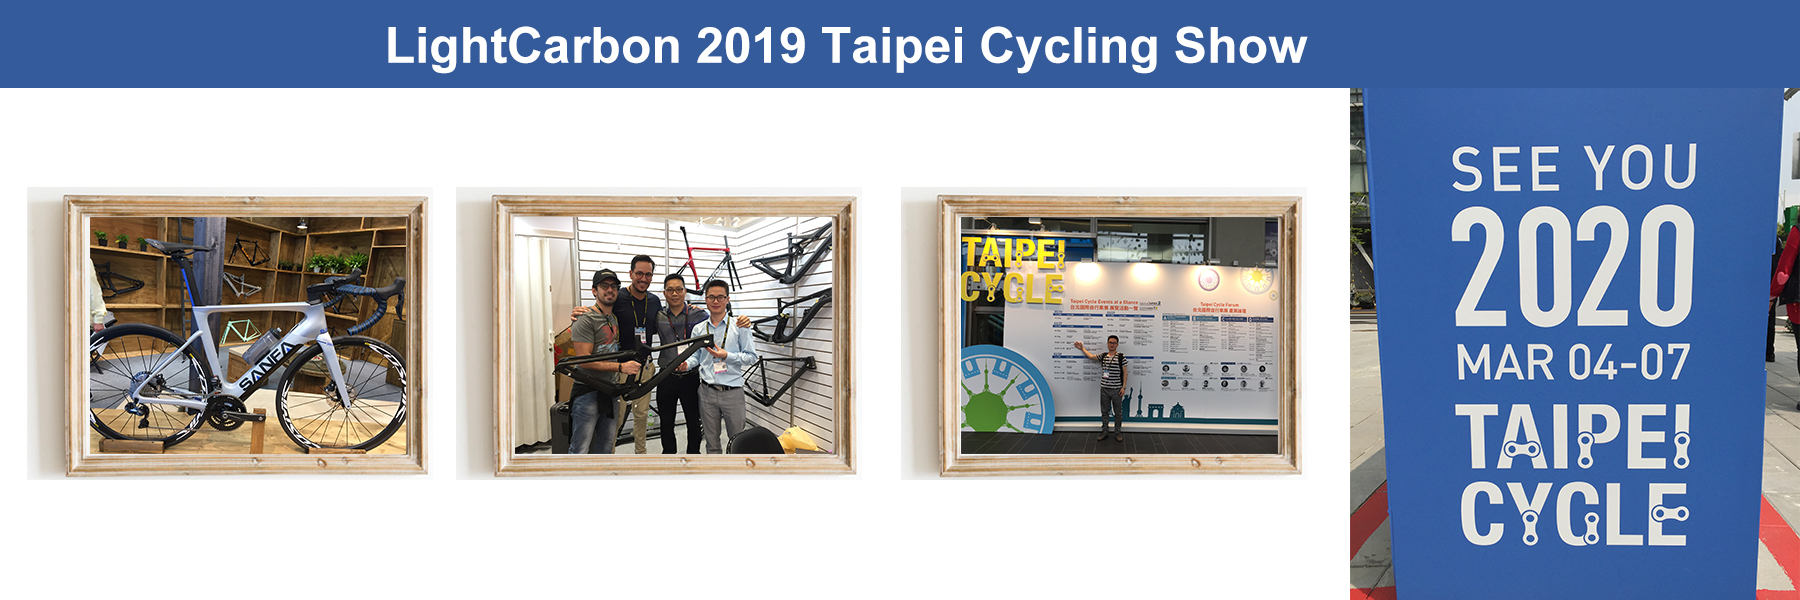 Salon du cyclisme léger en carbone de Taipei 2019